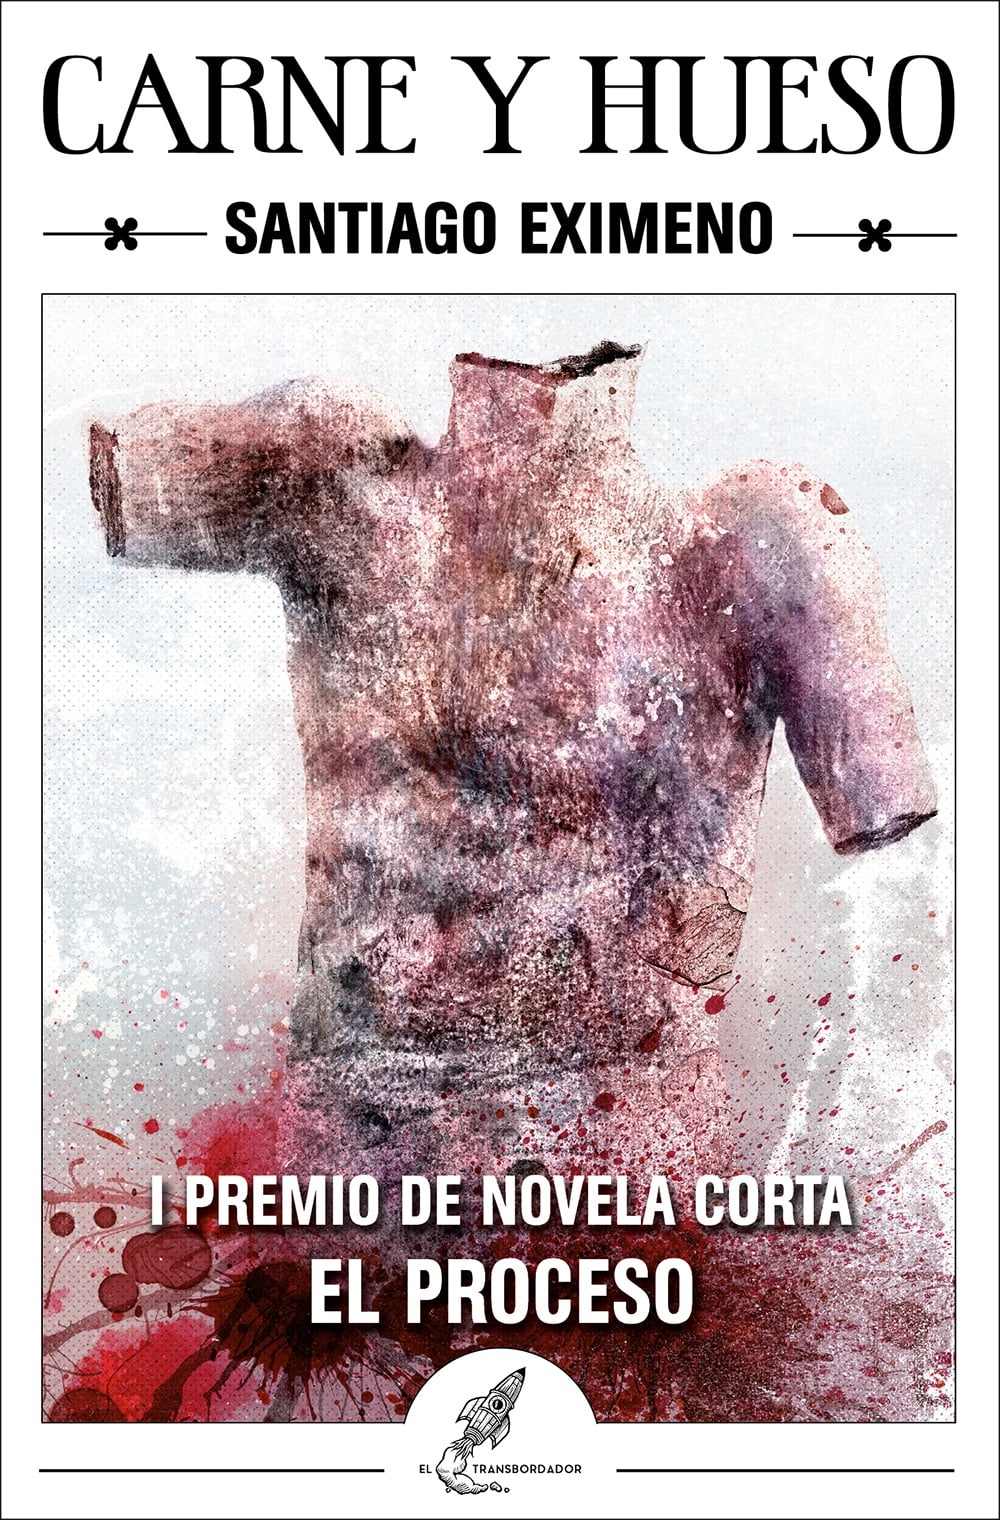 Carne y hueso "I Premio de novela corta El Proceso". 